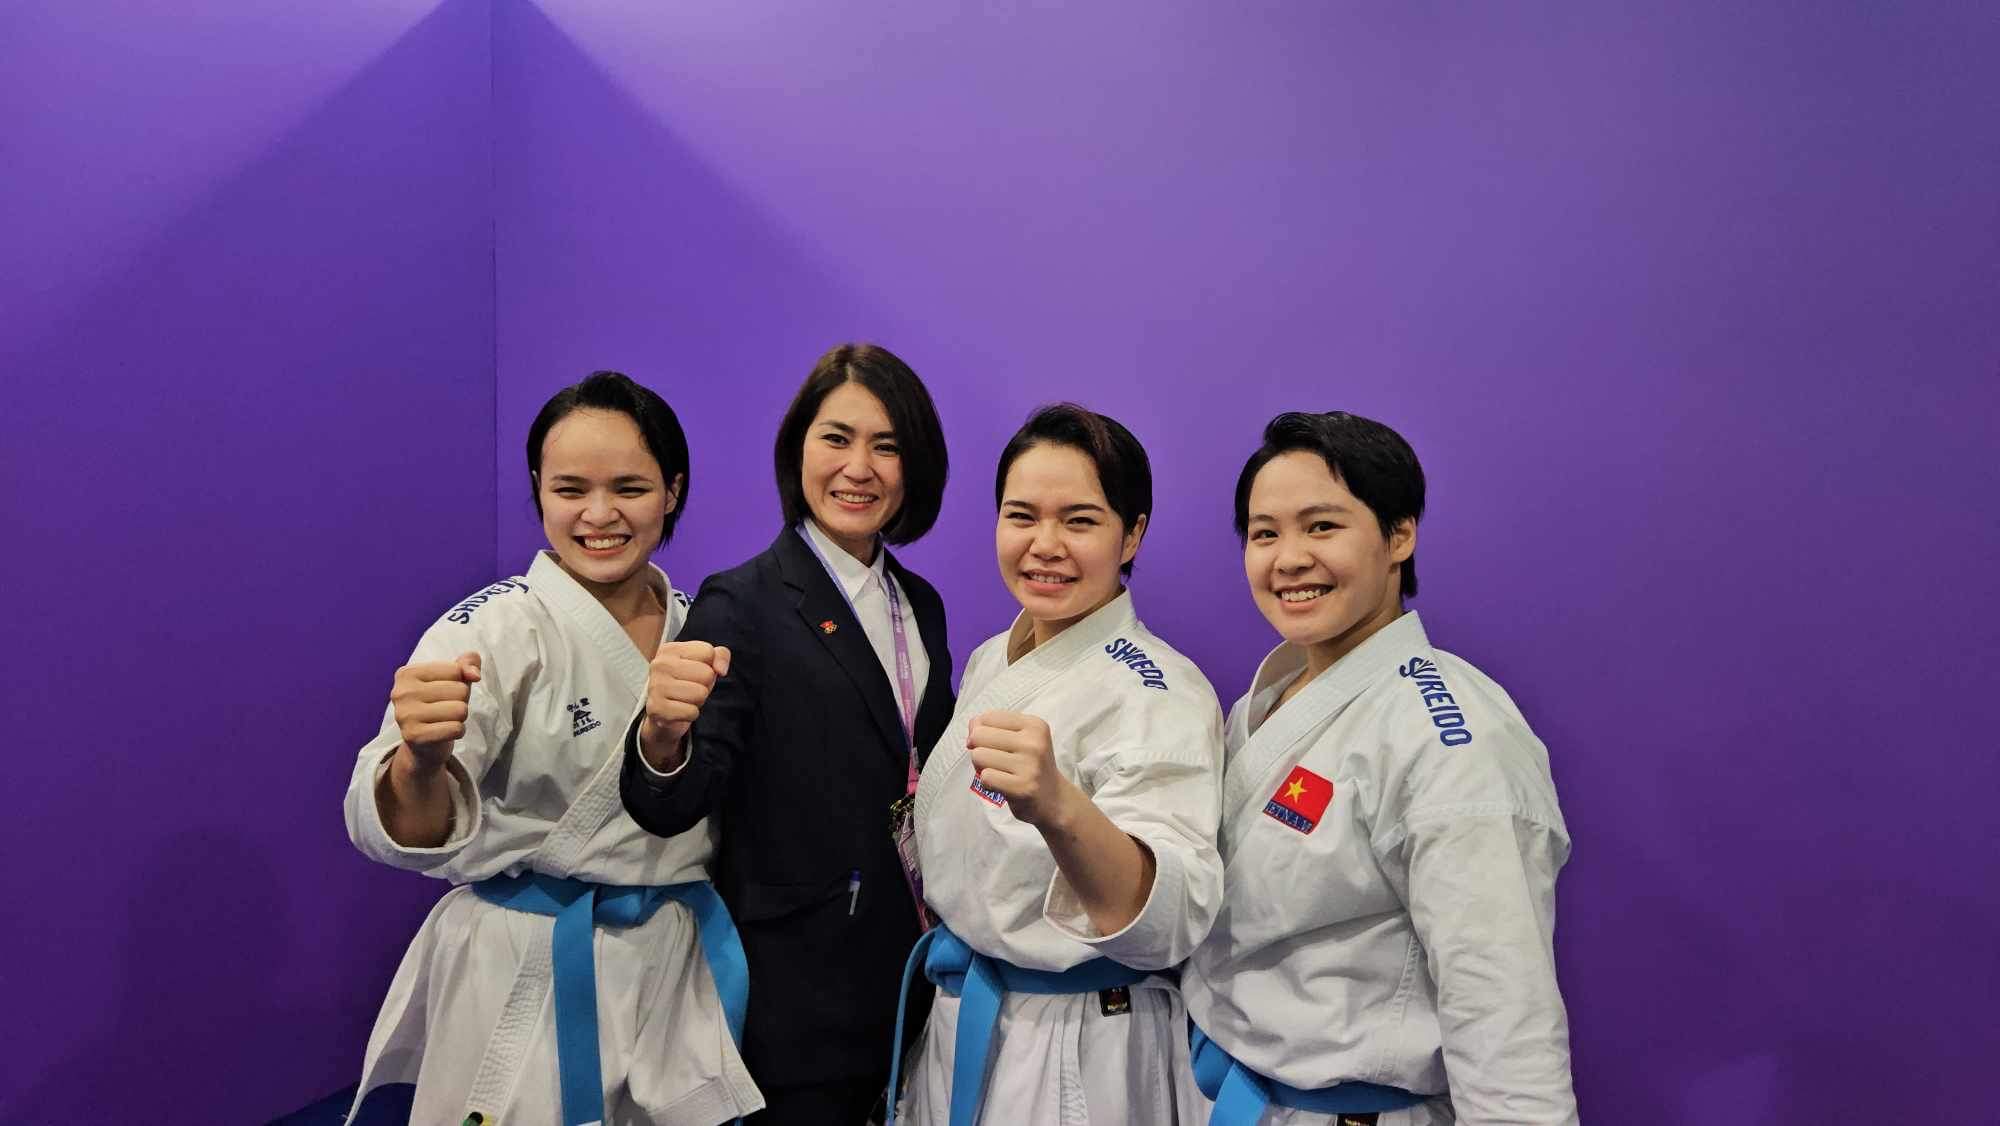 Karate xuất sắc mang về HCV thứ ba cho thể thao Việt Nam tại ASIAD 19 - Ảnh 6.